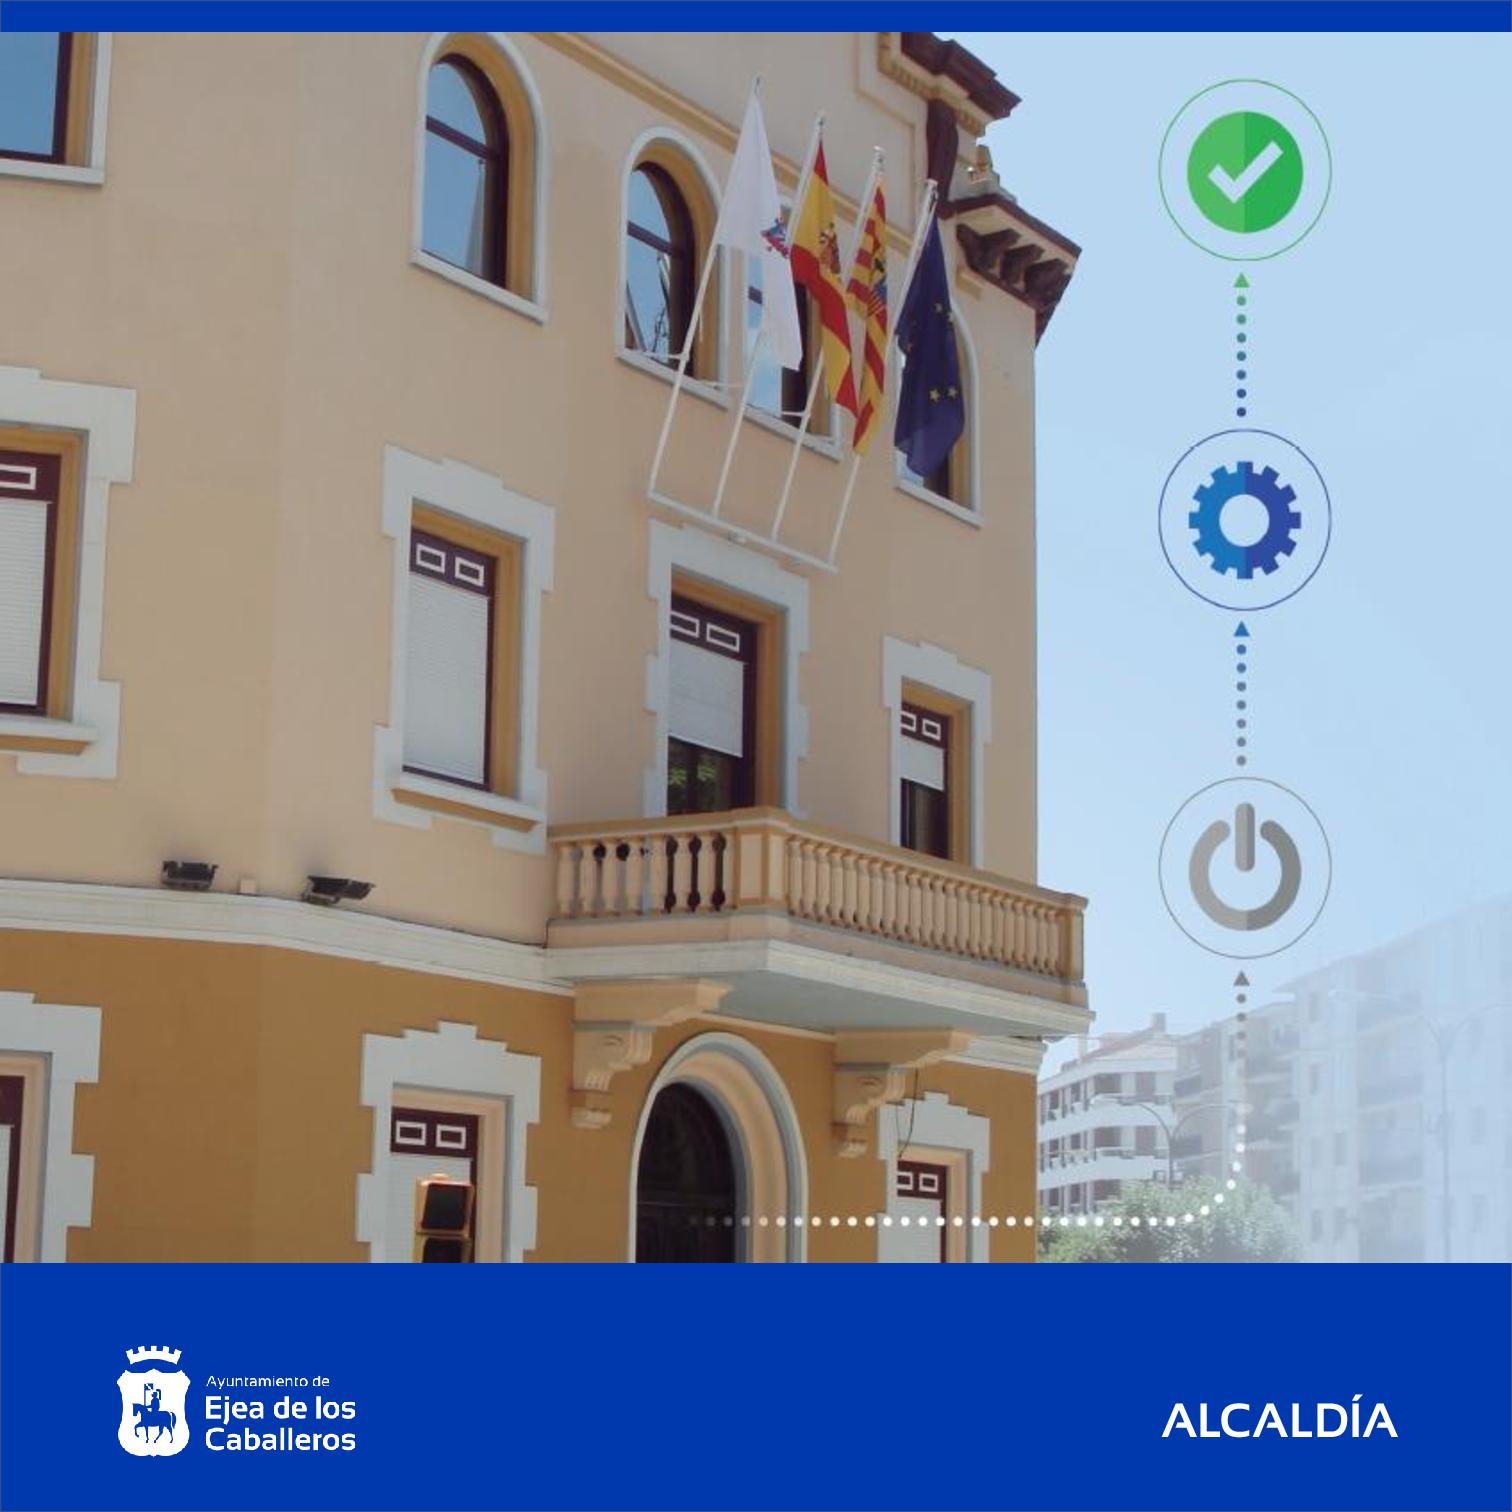 En este momento estás viendo El Ayuntamiento de Ejea de los Caballeros actualiza e informa sobre el cumplimiento de la acción de gobierno 2019 – 2023